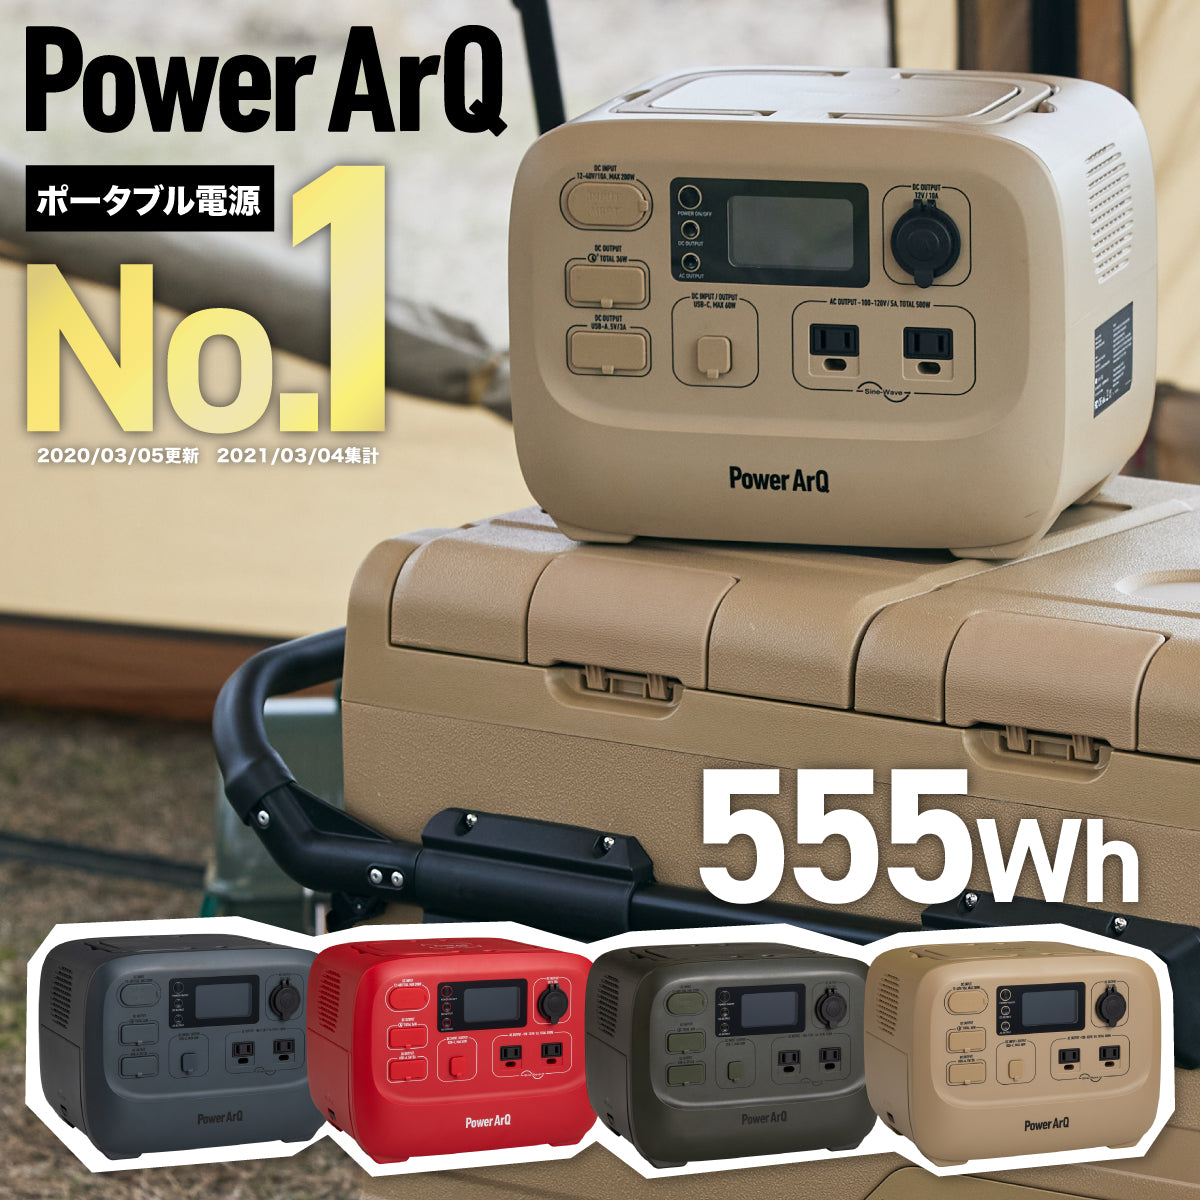 ポータブル電源 PowerArQ 大容量 555Wh 蓄電池 Smart Tap 冒険に、あなたらしさを。 – PowerArQ （パワーアーク）公式オンラインストア